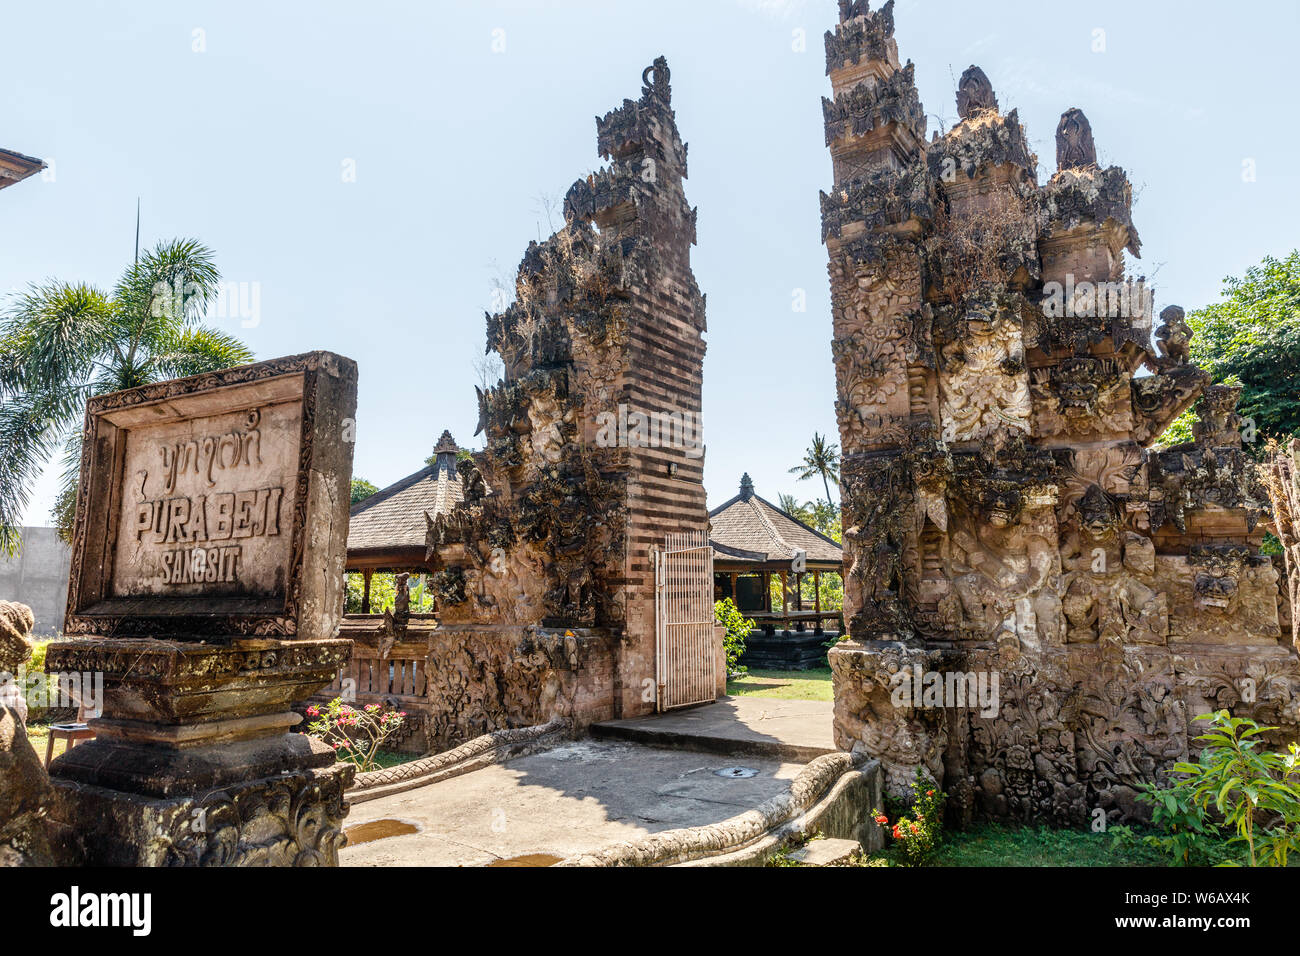 Stein Zeichen von Pura Beji Sangsit - eine nördliche Balinesischen hinduistischen Tempel. Sangsit Dorf, Buleleng, Bali, Indonesien. Stockfoto